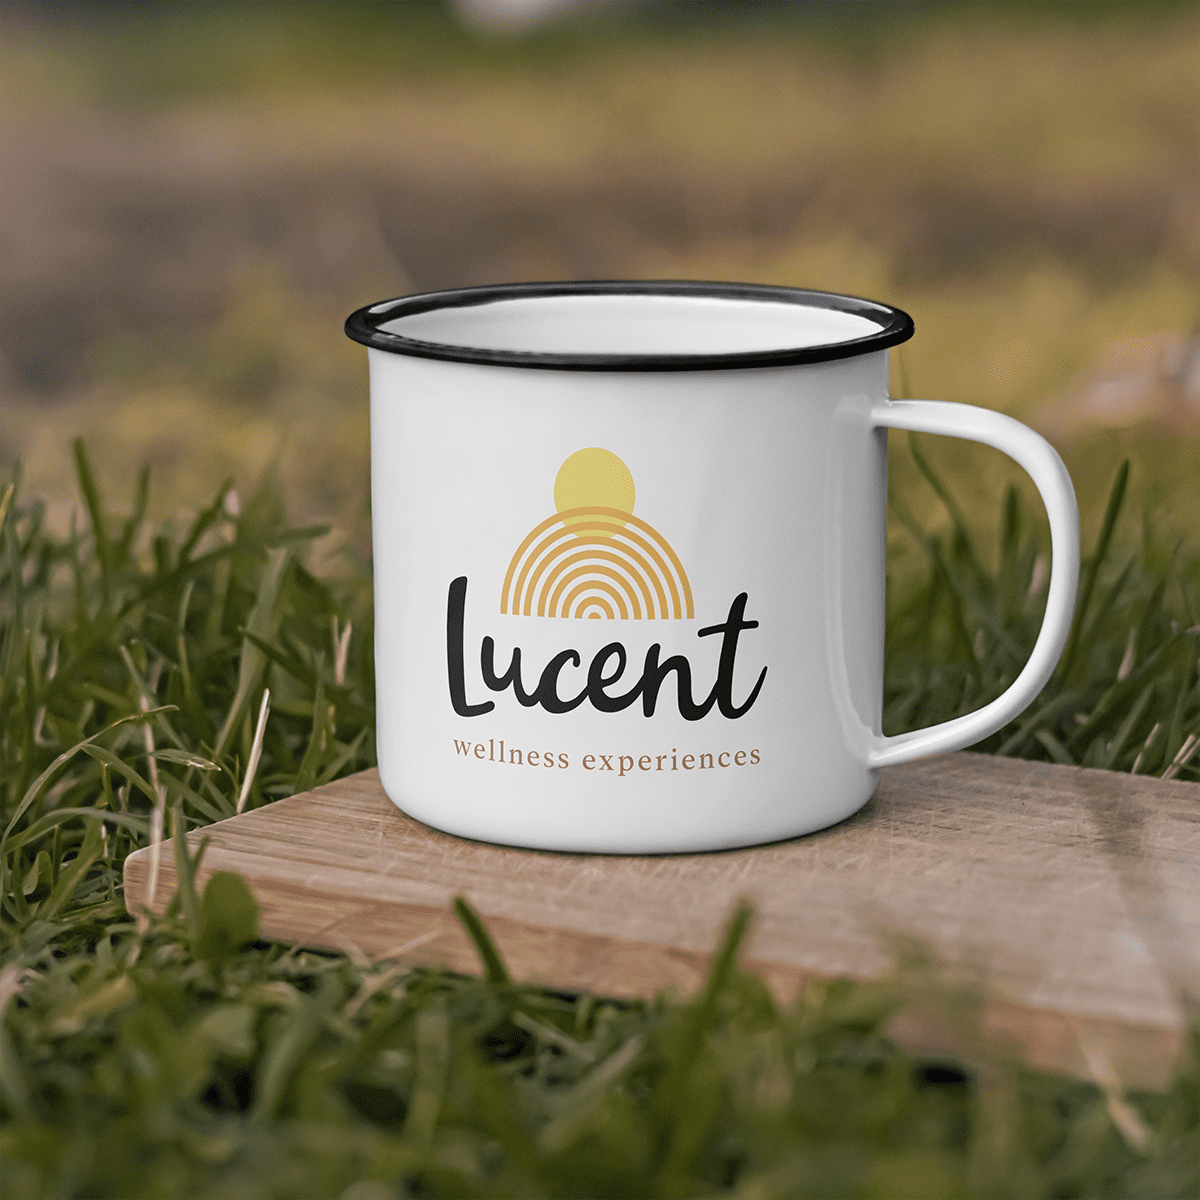 Lucent Wellness Experiences mug